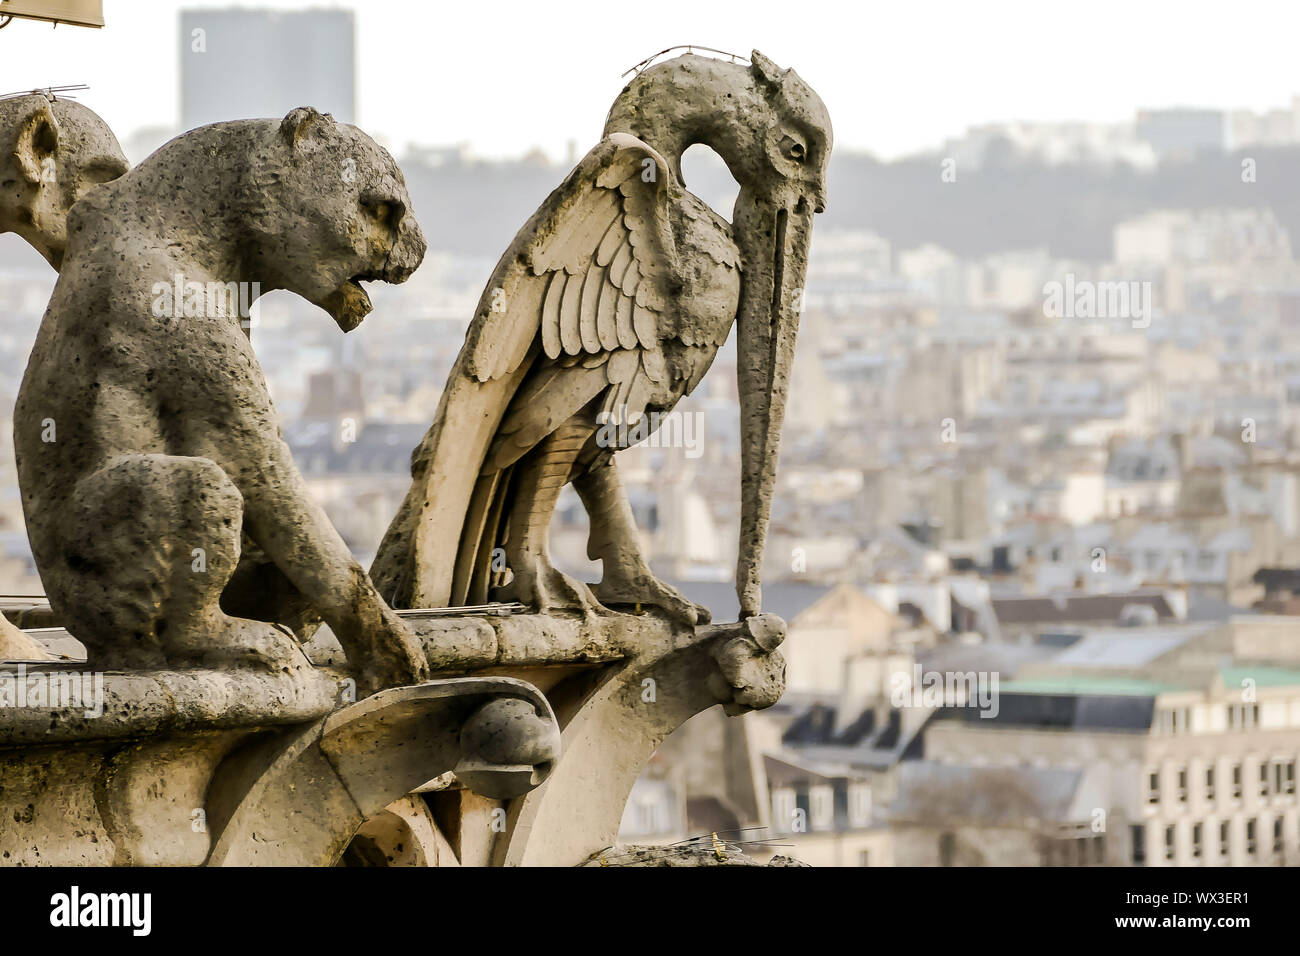 La catedral de Notre Dame de París iglesia catedral detalle, imagen fotográfica de una hermosa vista panorámica de la ciudad metropolitana de París Foto de stock